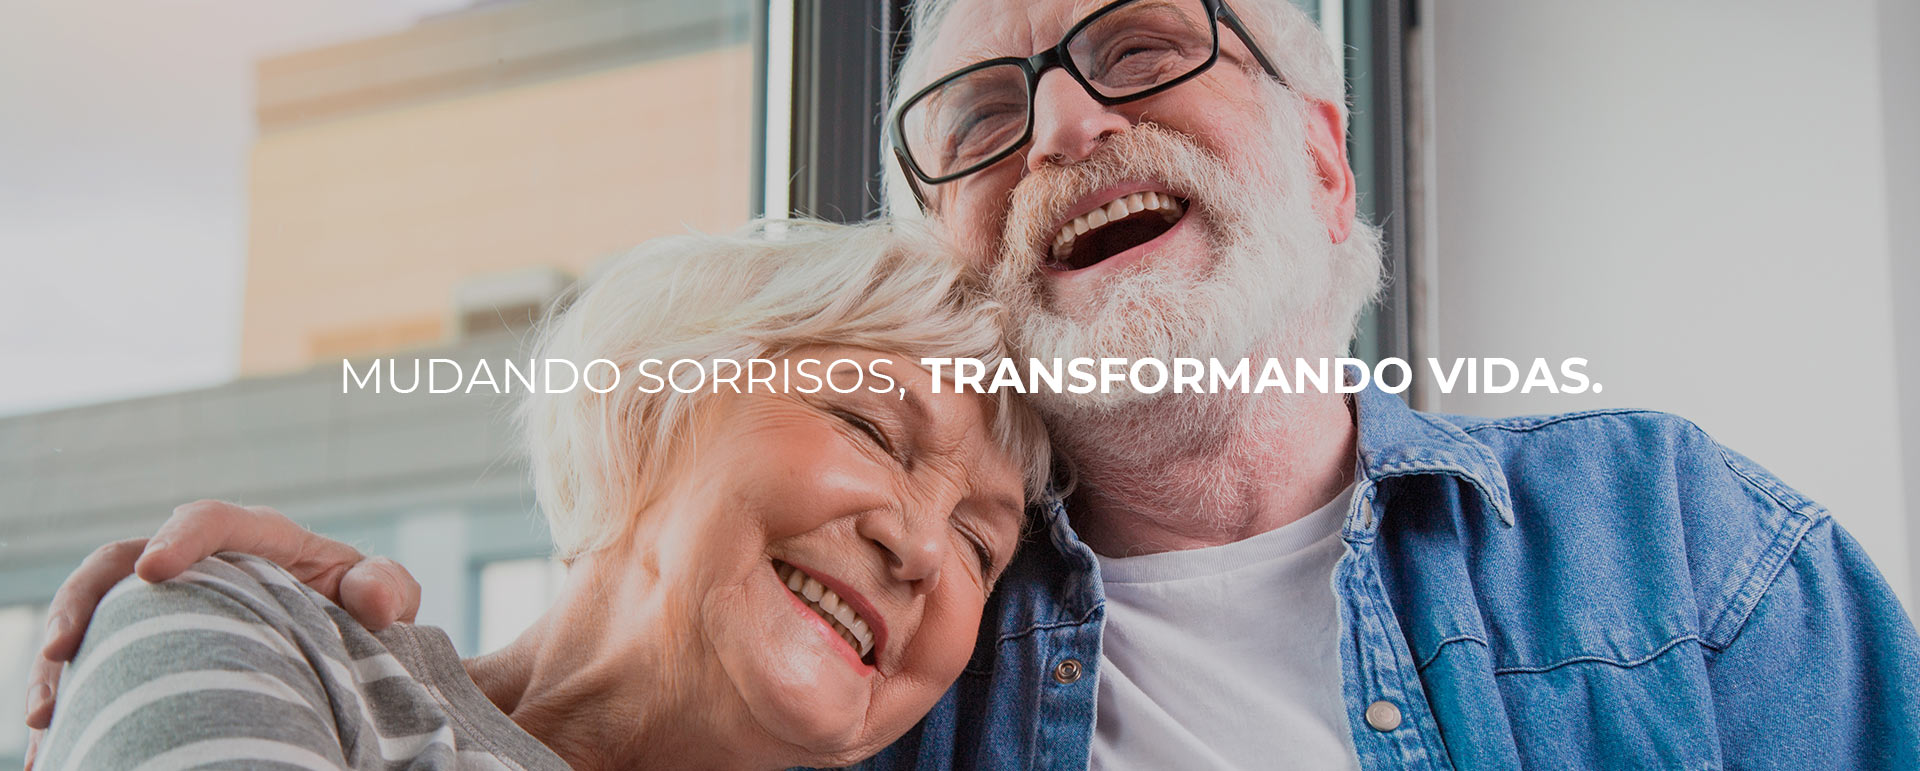 mudando_sorrisos_transformando_vidas_ortomix_odontologia_brasilia-1